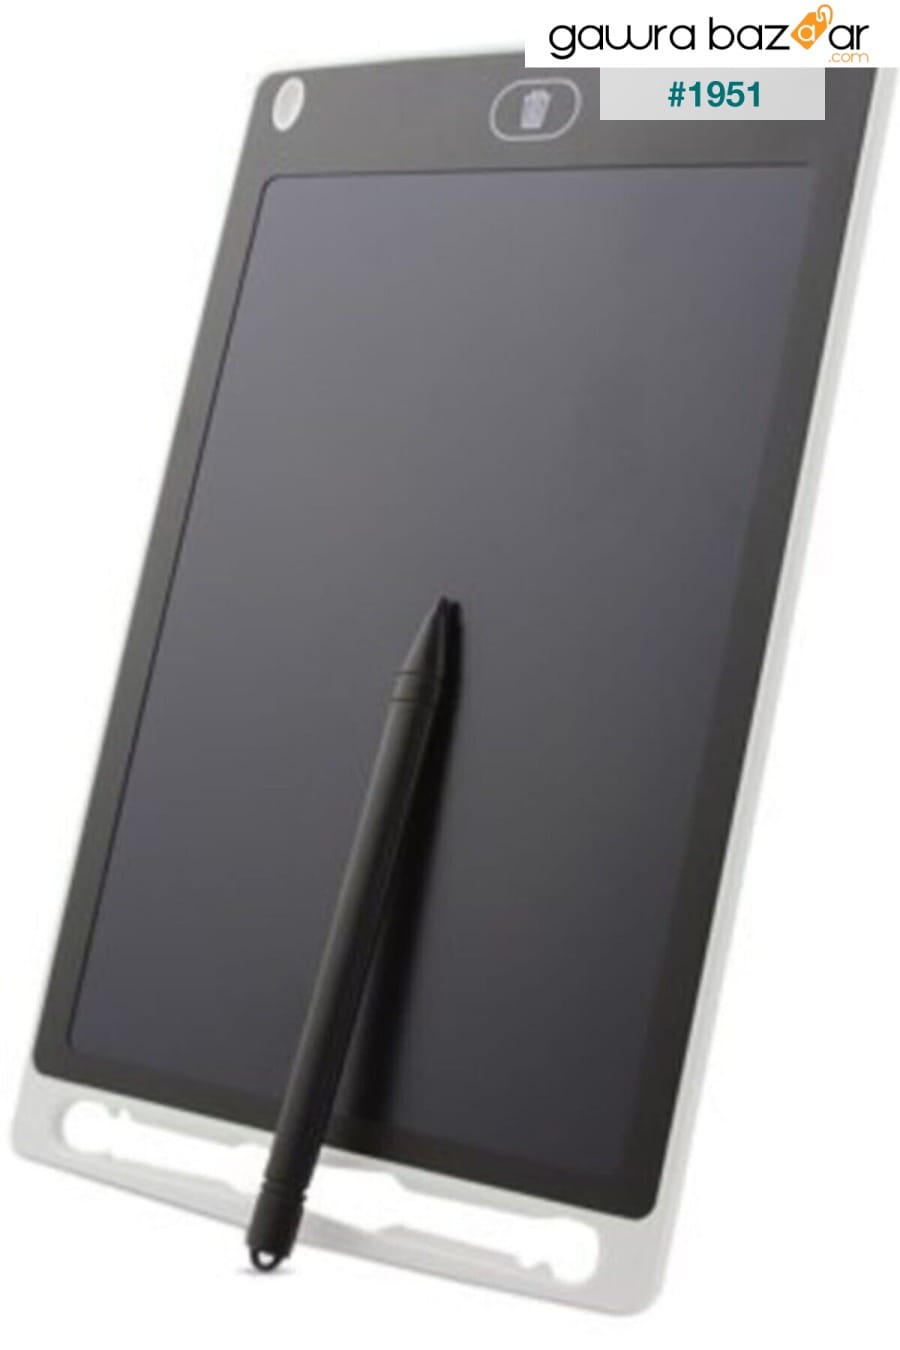 لوح كتابة بشاشة LCD مقاس 8.5 بوصة بقلم رقمي وقلم رسم وكتابة ومذكرة جرافيك وكتابة قرص تعليمي - أبيض Slyfox 1